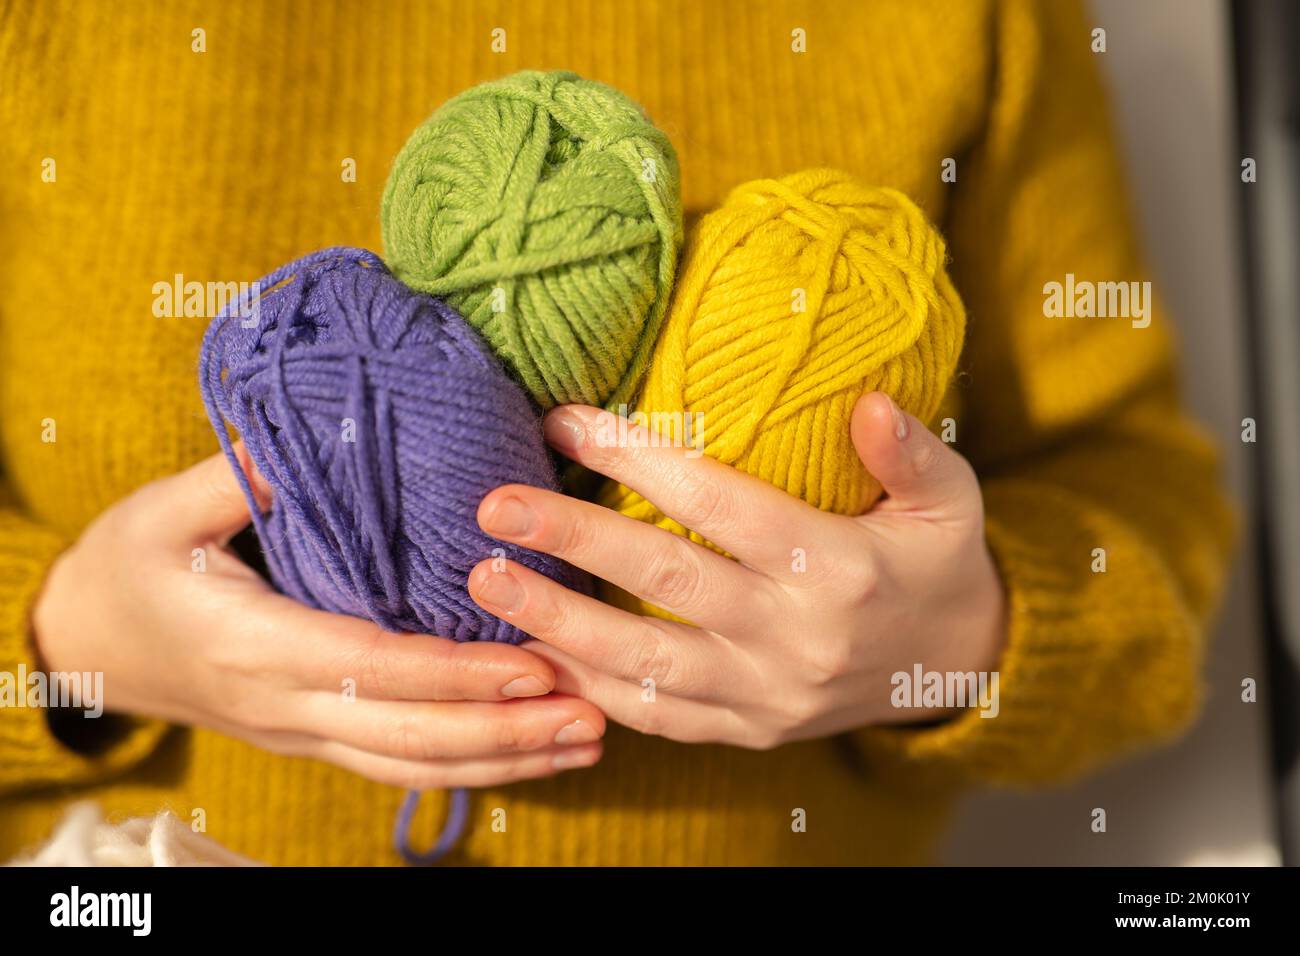 Hilados de lana de color amarillo, morado y verde. Tejido hobby.broches de  hilo de varios colores en las manos en un jersey de lana de mostaza.Hobby y  costura Fotografía de stock -